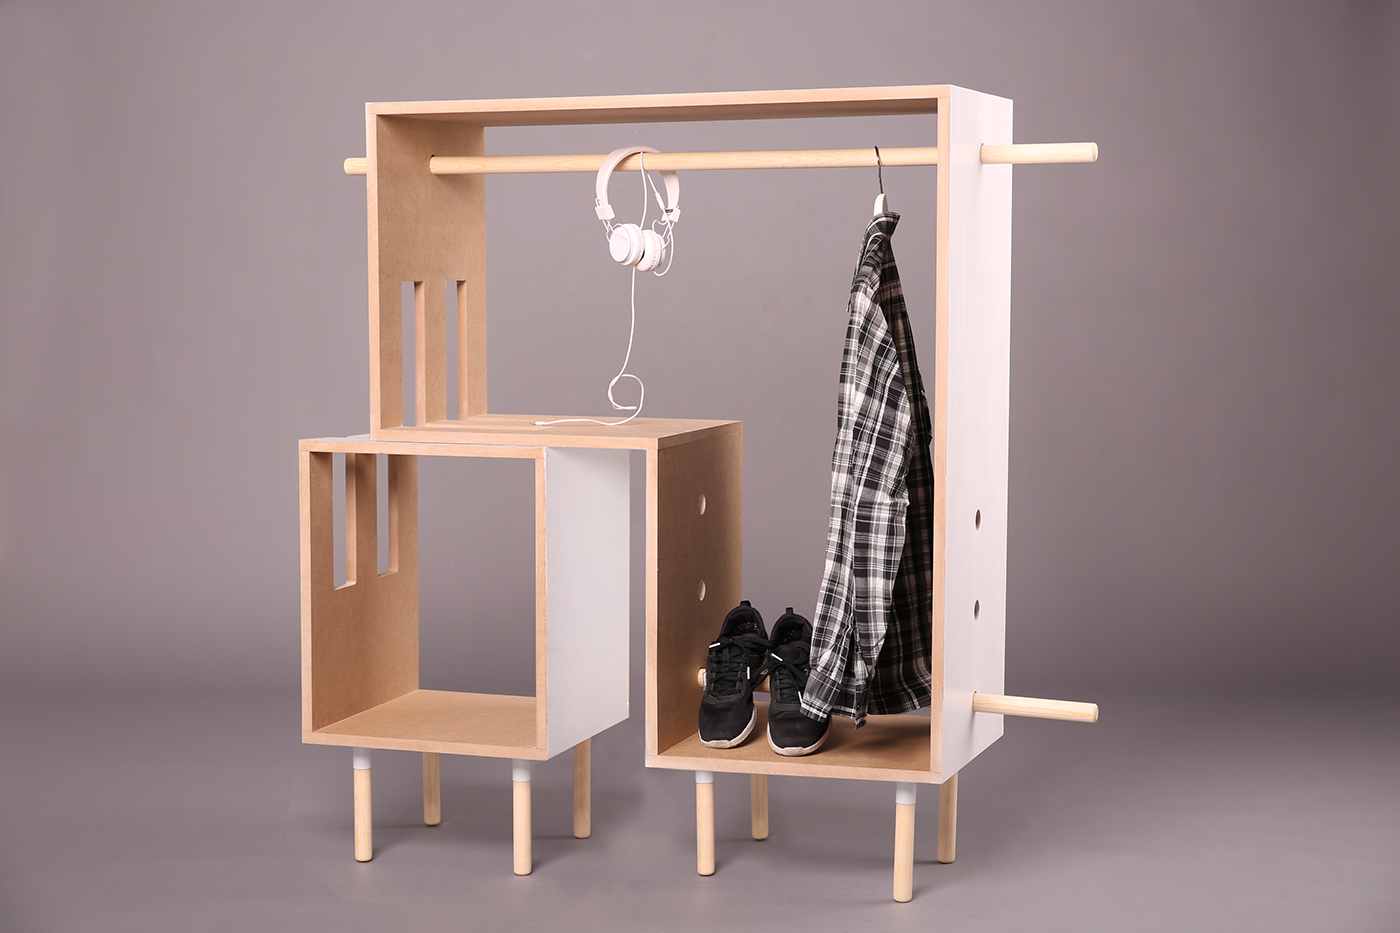 design furniture Projest modern nomad modern